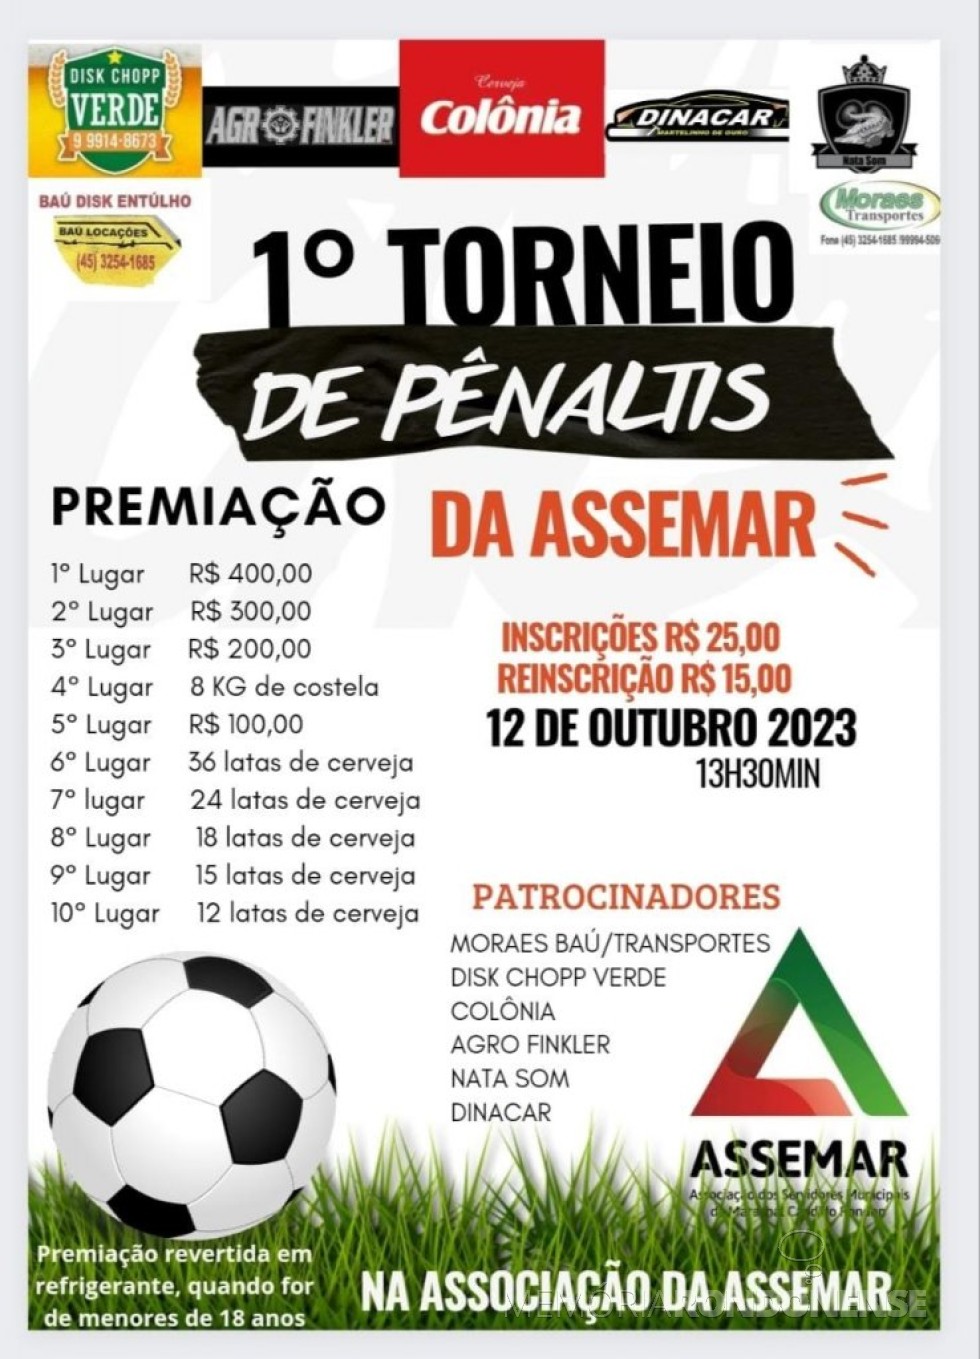 || Cartaz convite para o 1º Torneio de Pênaltis da Assemar, em outubro de 2023.
Imagem: Acervo Projeto Memória Rondonense -  FOTO 20 -